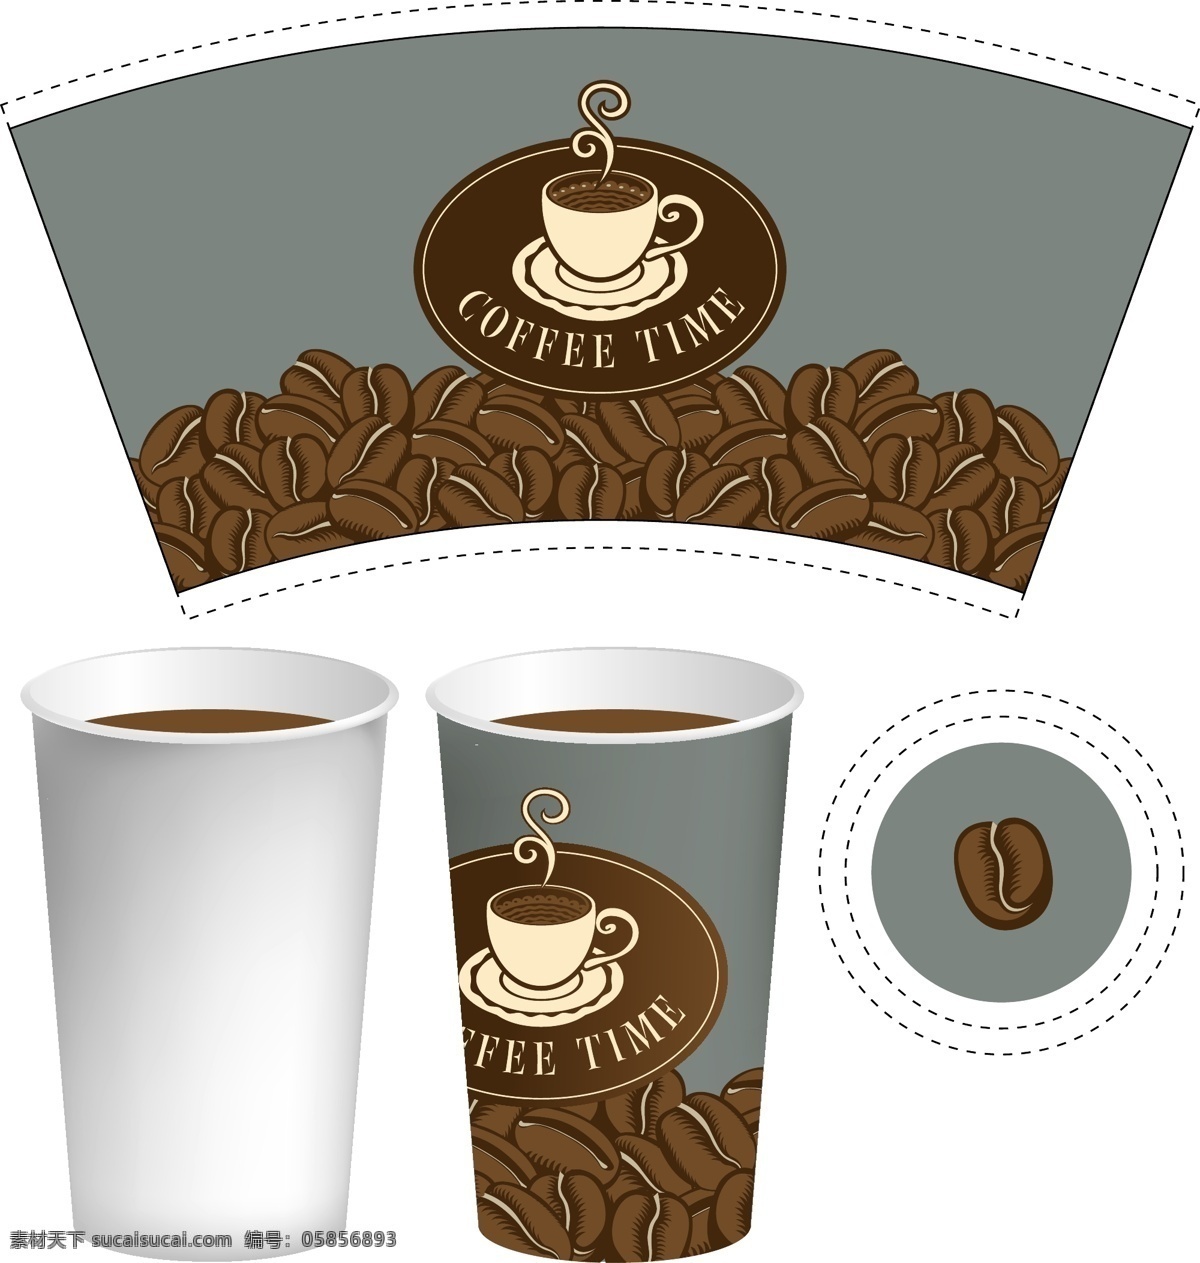 咖啡杯 咖啡纸杯 纸咖啡杯 一次性咖啡杯 外卖咖啡 咖啡外卖 一次性纸杯 纸杯 纸杯展开图 纸杯设计 咖啡豆 咖啡店